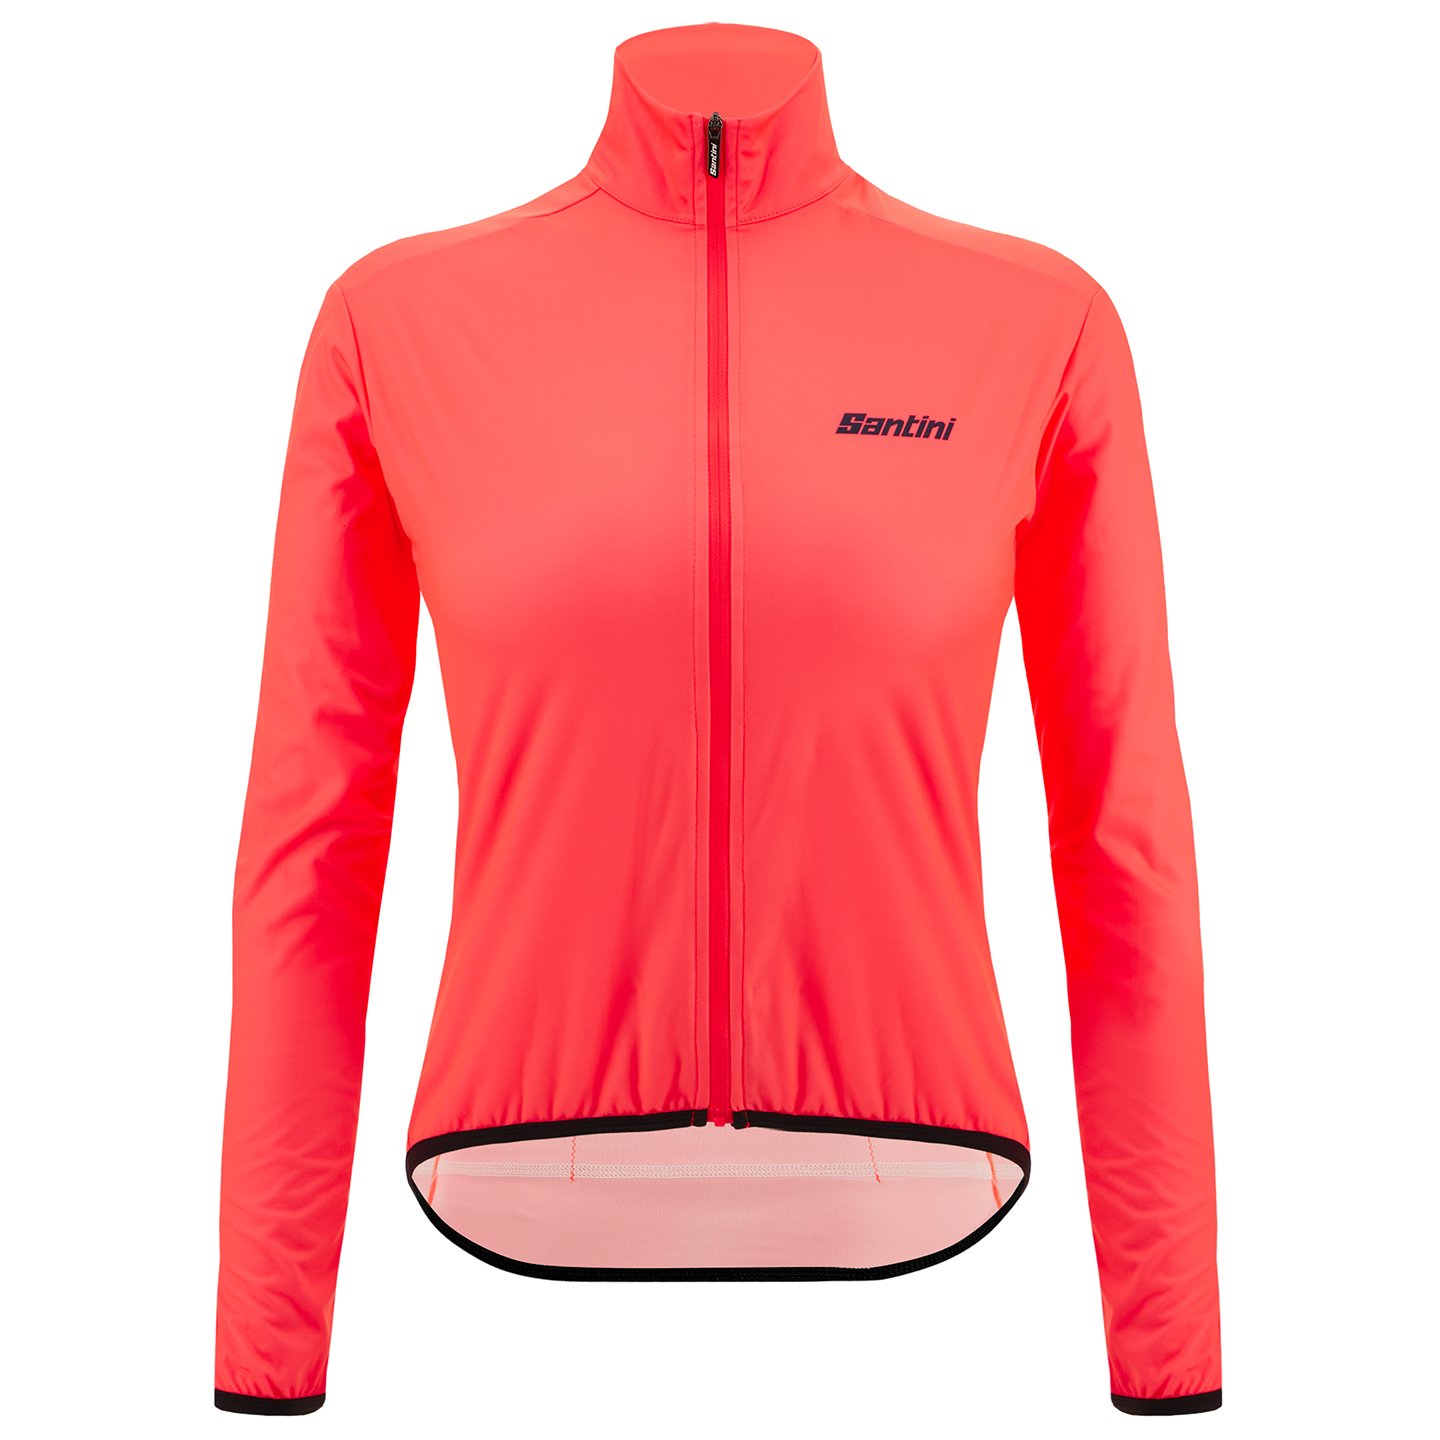 SANTINI Nebula Puro Women’s Wind Jacket Women’s Wind Jacket, size S, Cycle jacket, Cycle clothing